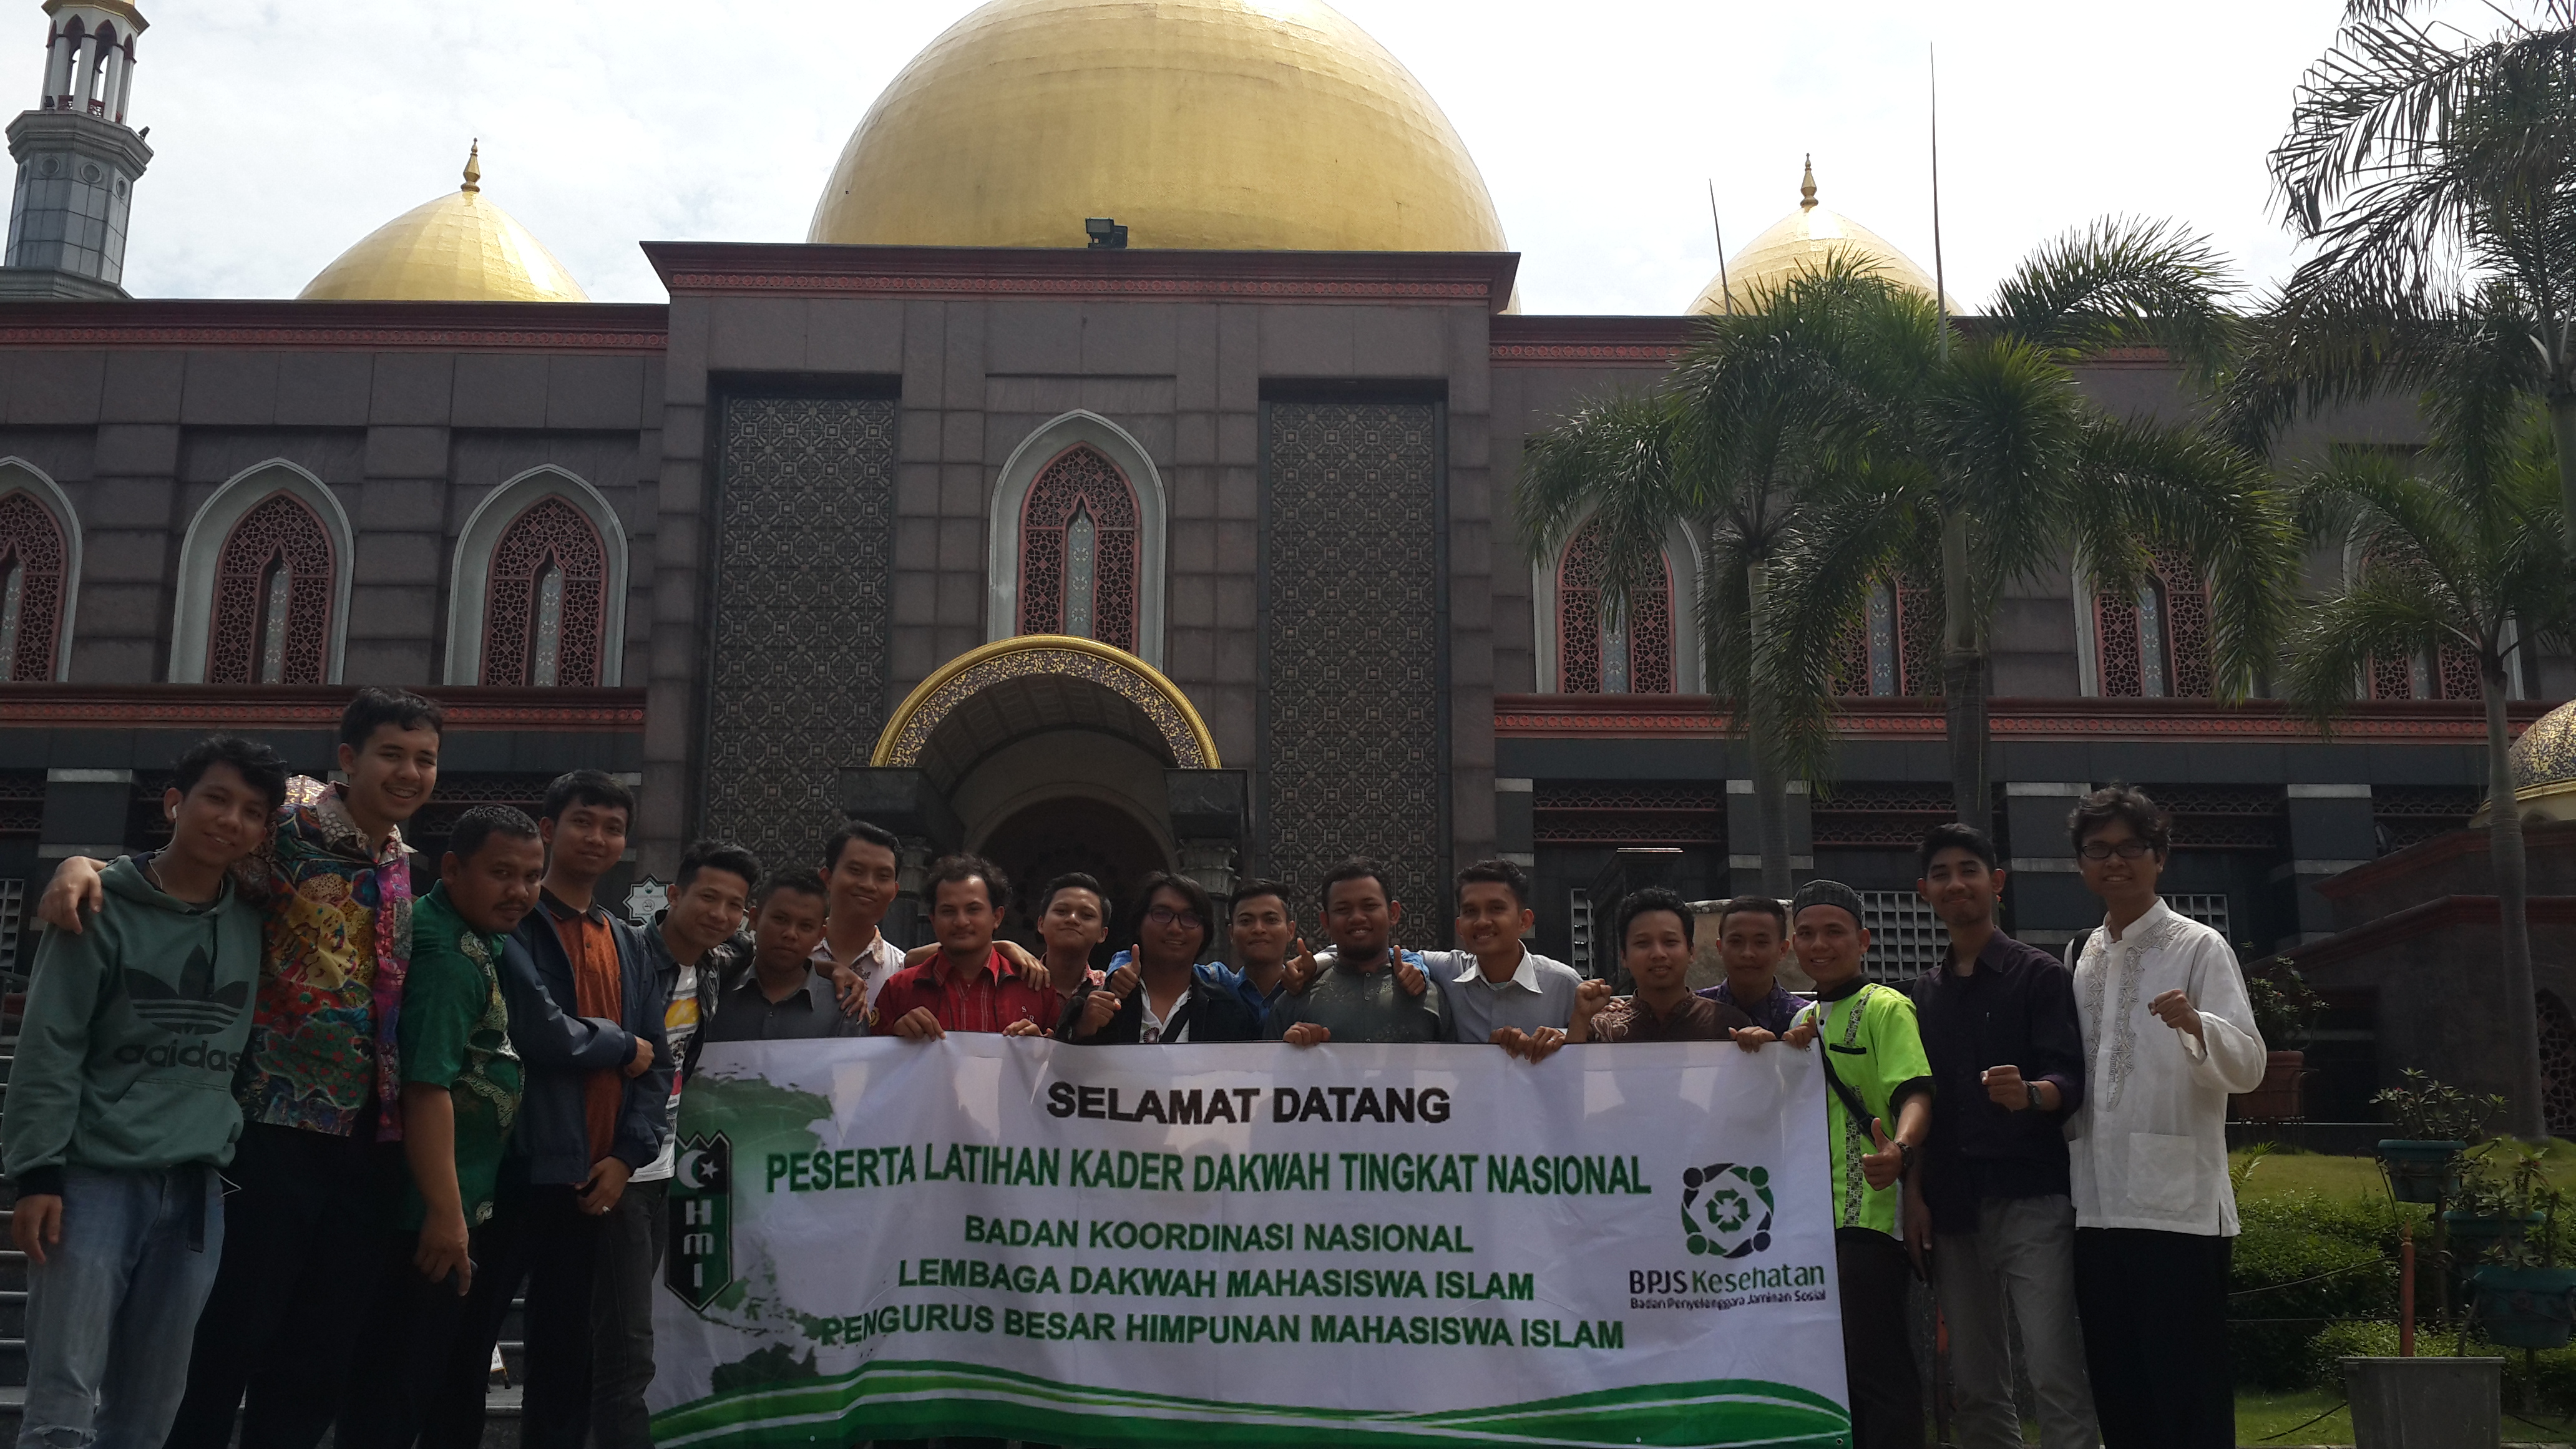 TANTANGAN PARTAI POLITIK ISLAM INDONESIA DALAM MENGHADAPI REALITAS